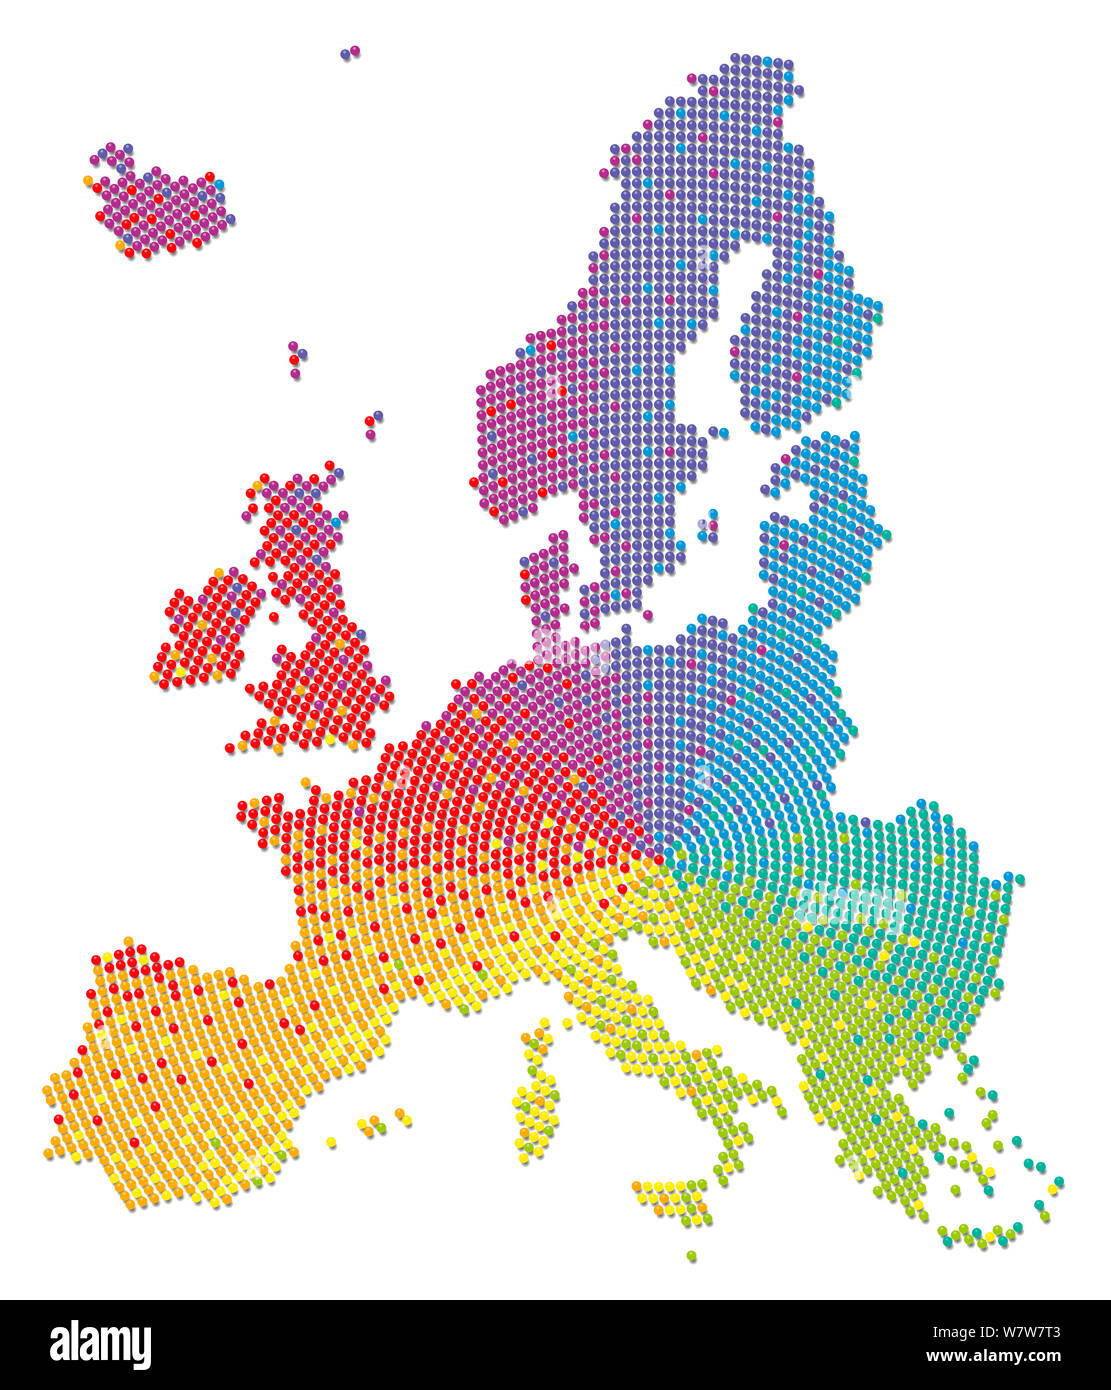 Regenbogenfarbige Europa Karte. Symbol für eine multikulturelle, tolerant, liberal, Sozial- und bunten Organisation - und für Vielfalt, Chancengleichheit, Eingliederung Stockfoto